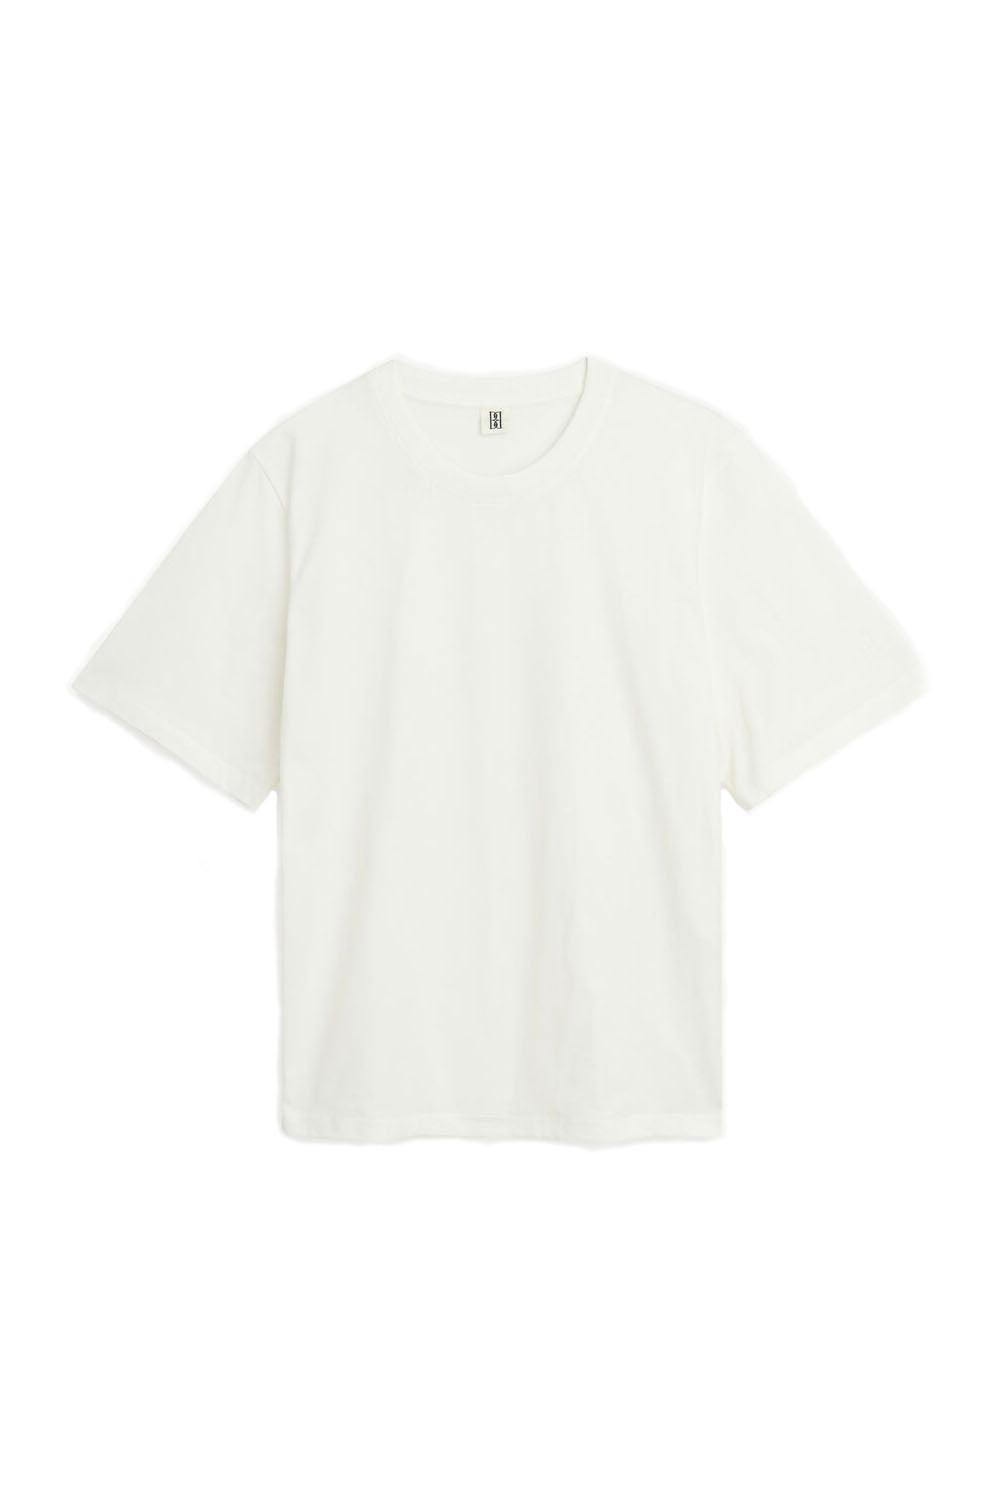 Hedil T-shirt soft White